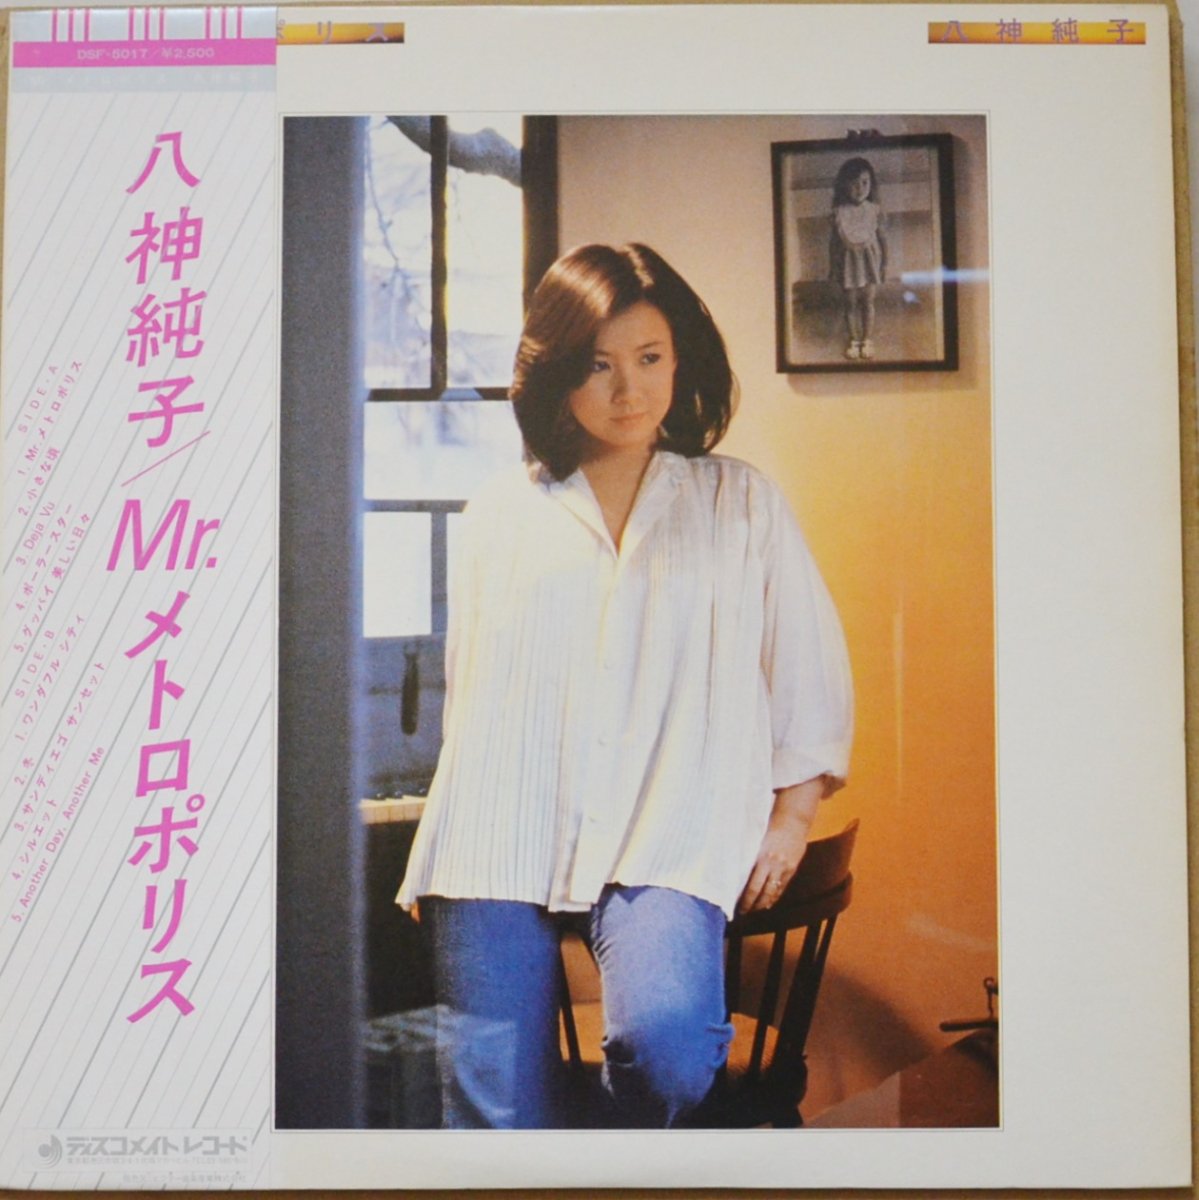 八神純子 JUNKO YAGAMI / MR. メトロポリス / MR.METROPOLICE (LP 